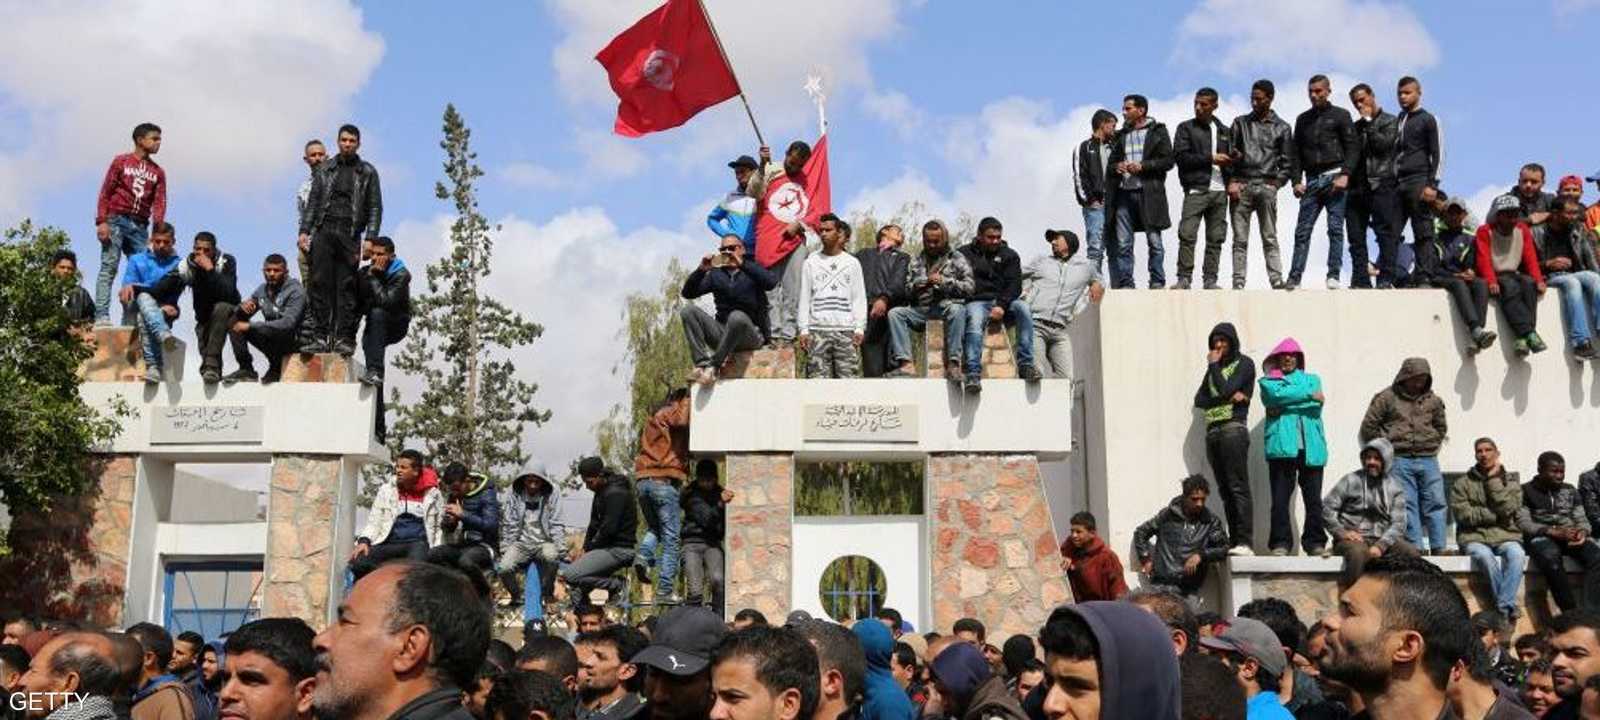 حاولت الحكومة التونسية خفض التوتر في الولاية